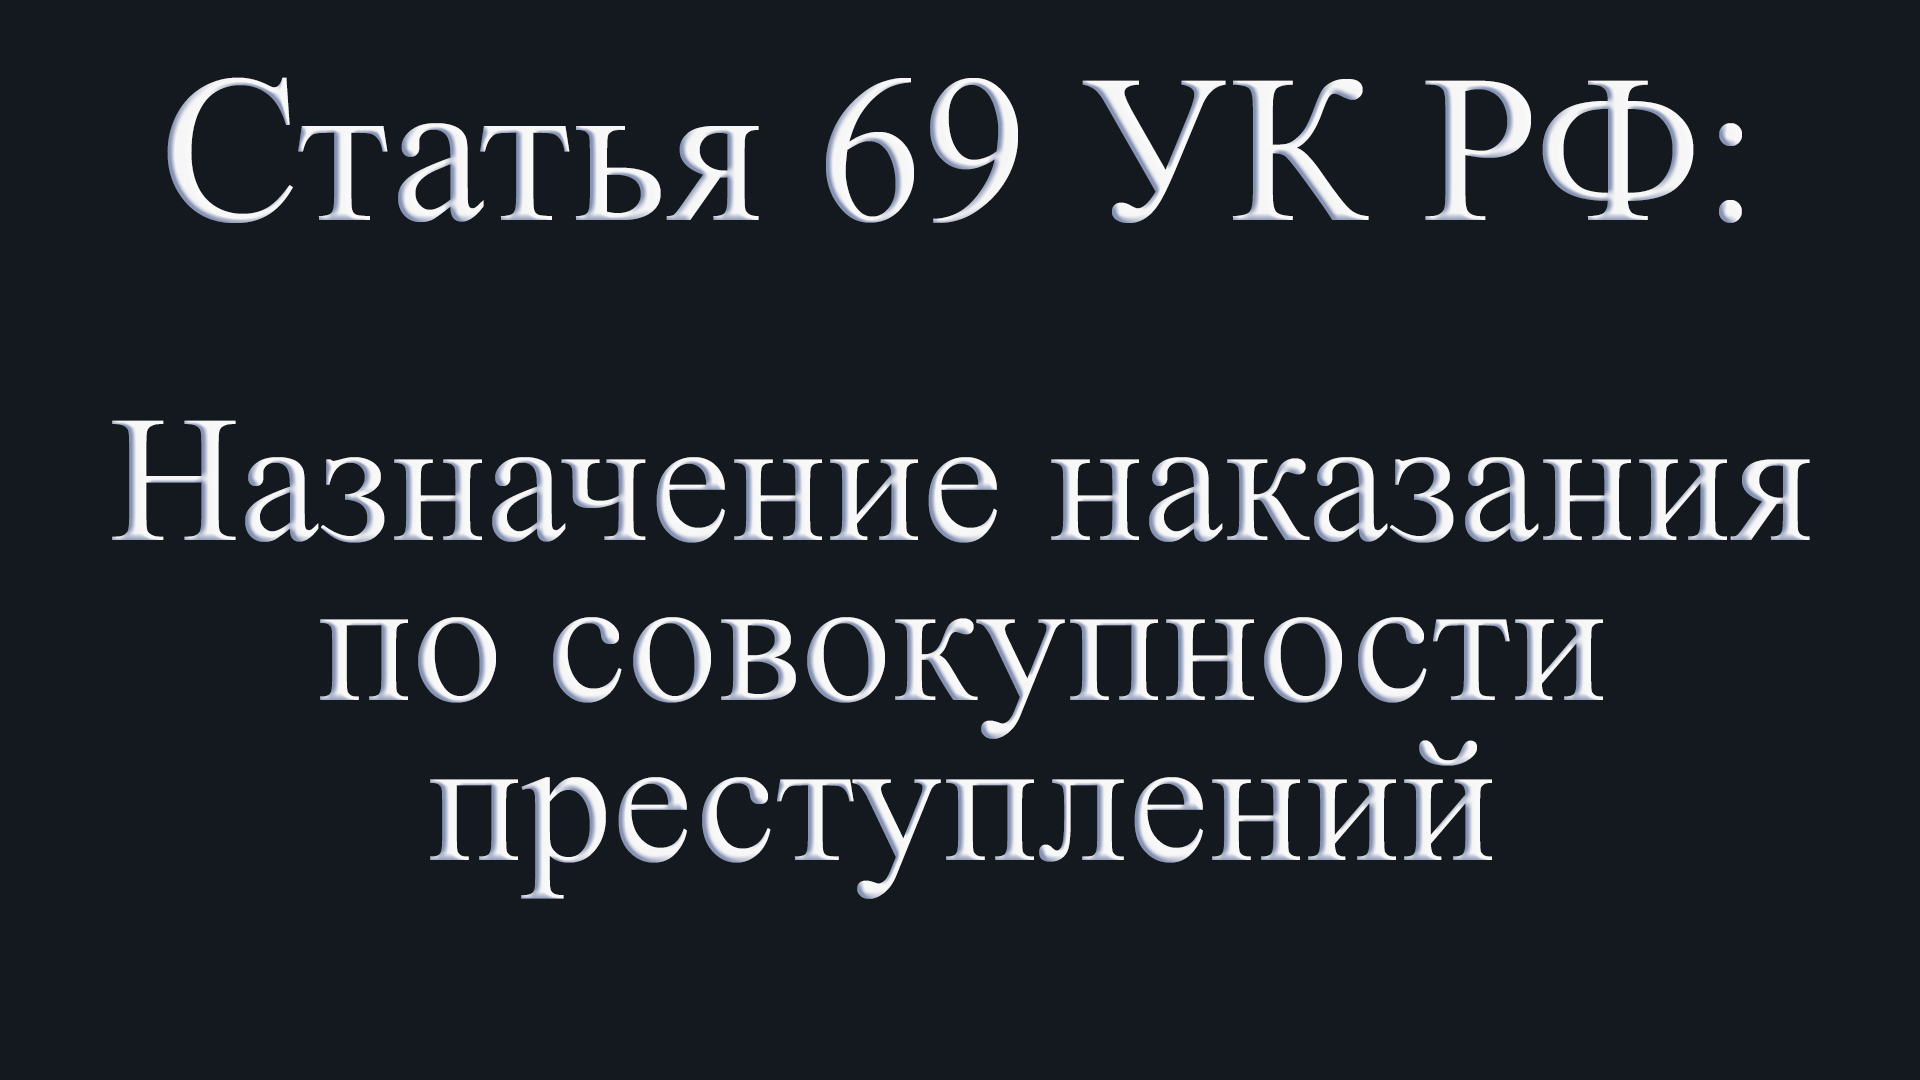 Статья 69 УК РФ: Назначение наказания по совокупности преступлений.